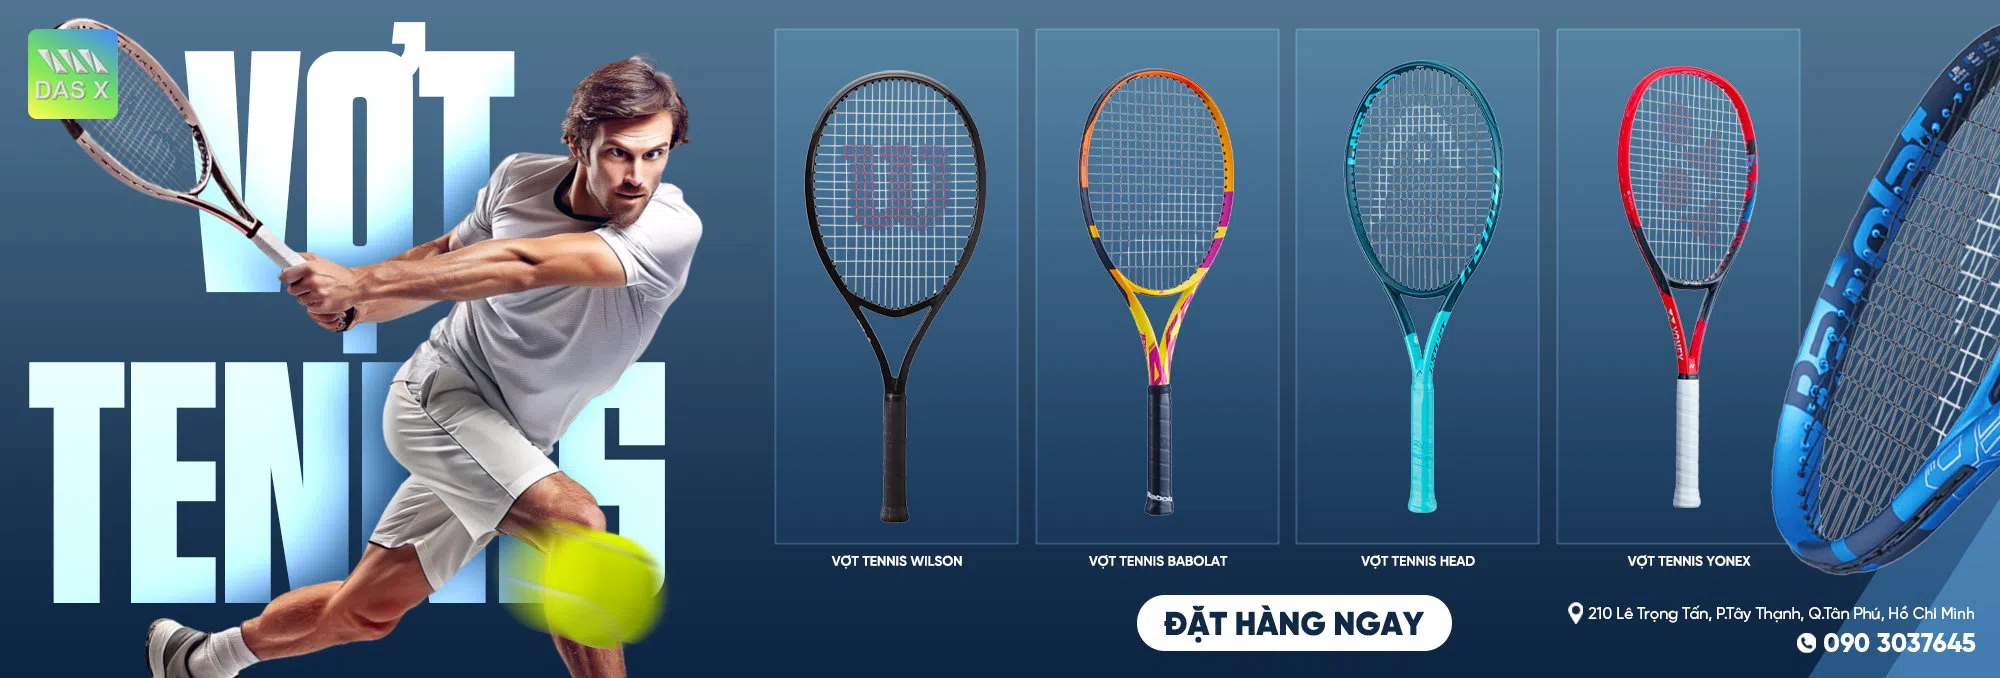 Banner Ads vợt tennis